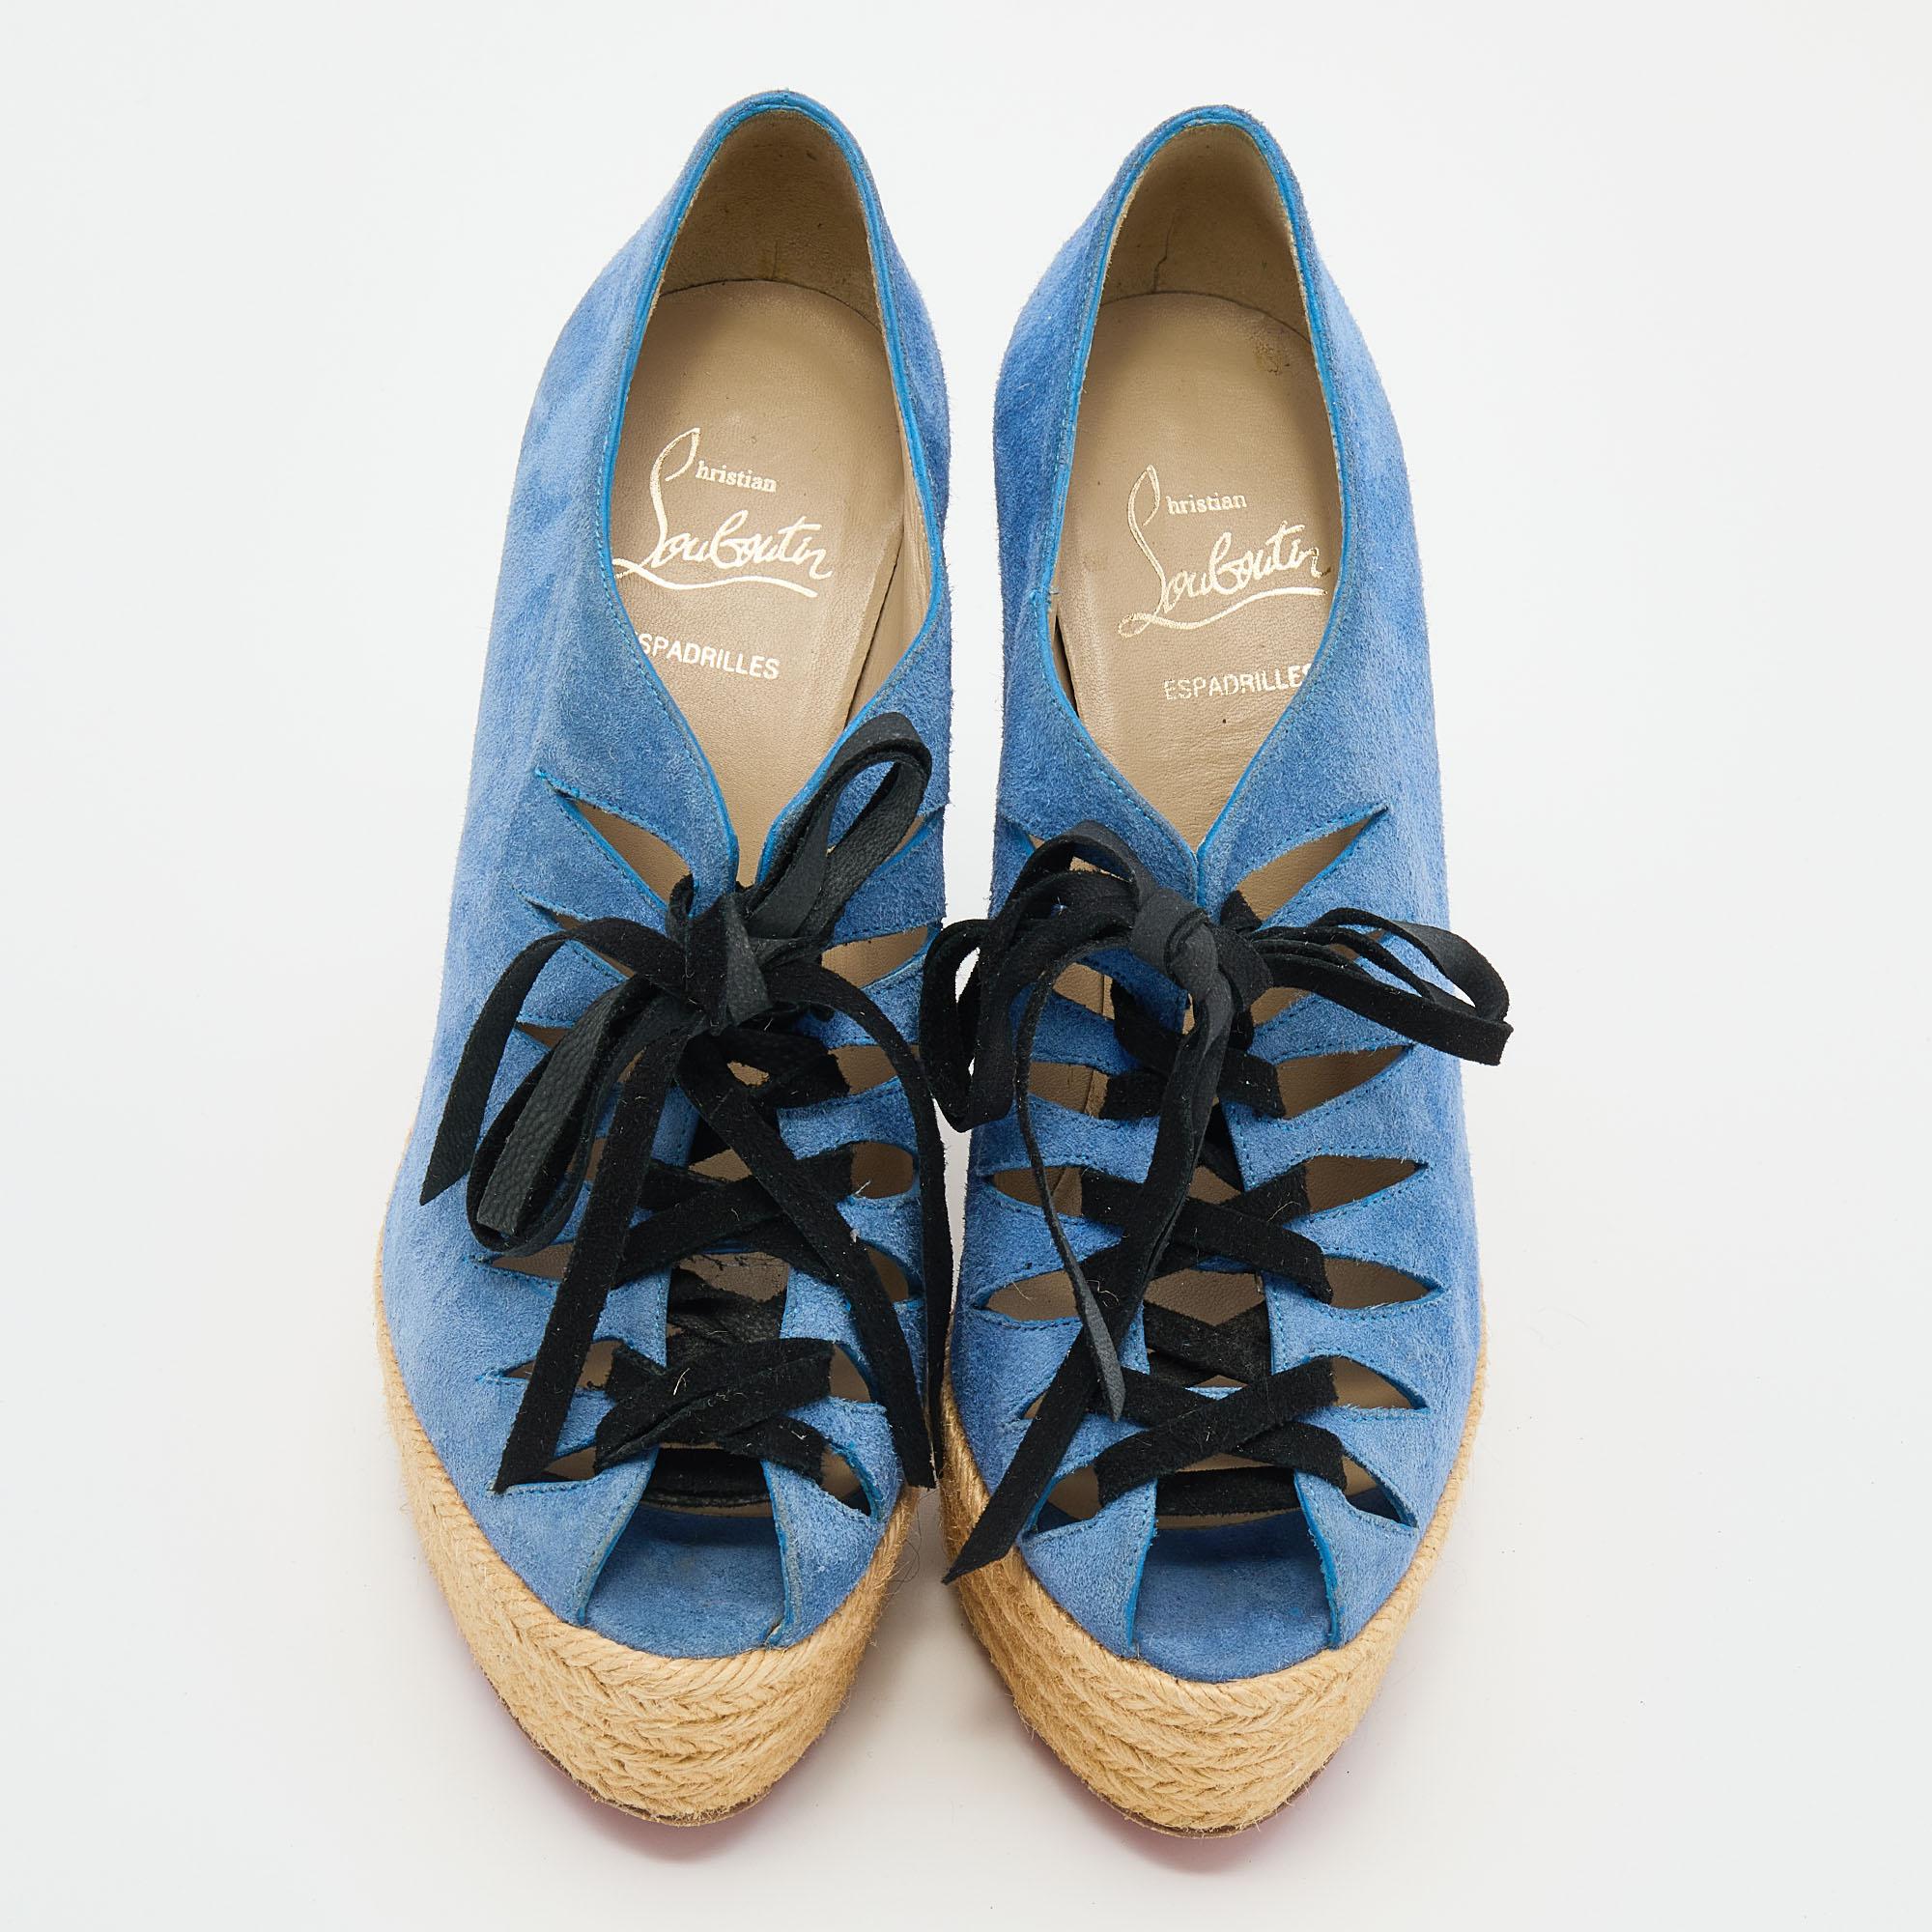 Ces sandales Christian Louboutin sont parfaites pour l'été ! Elles sont confectionnées en daim et présentent des lacets, des plateformes et des talons compensés en forme d'espadrille. Elles sont dotées d'une semelle intérieure en cuir lisse et d'une